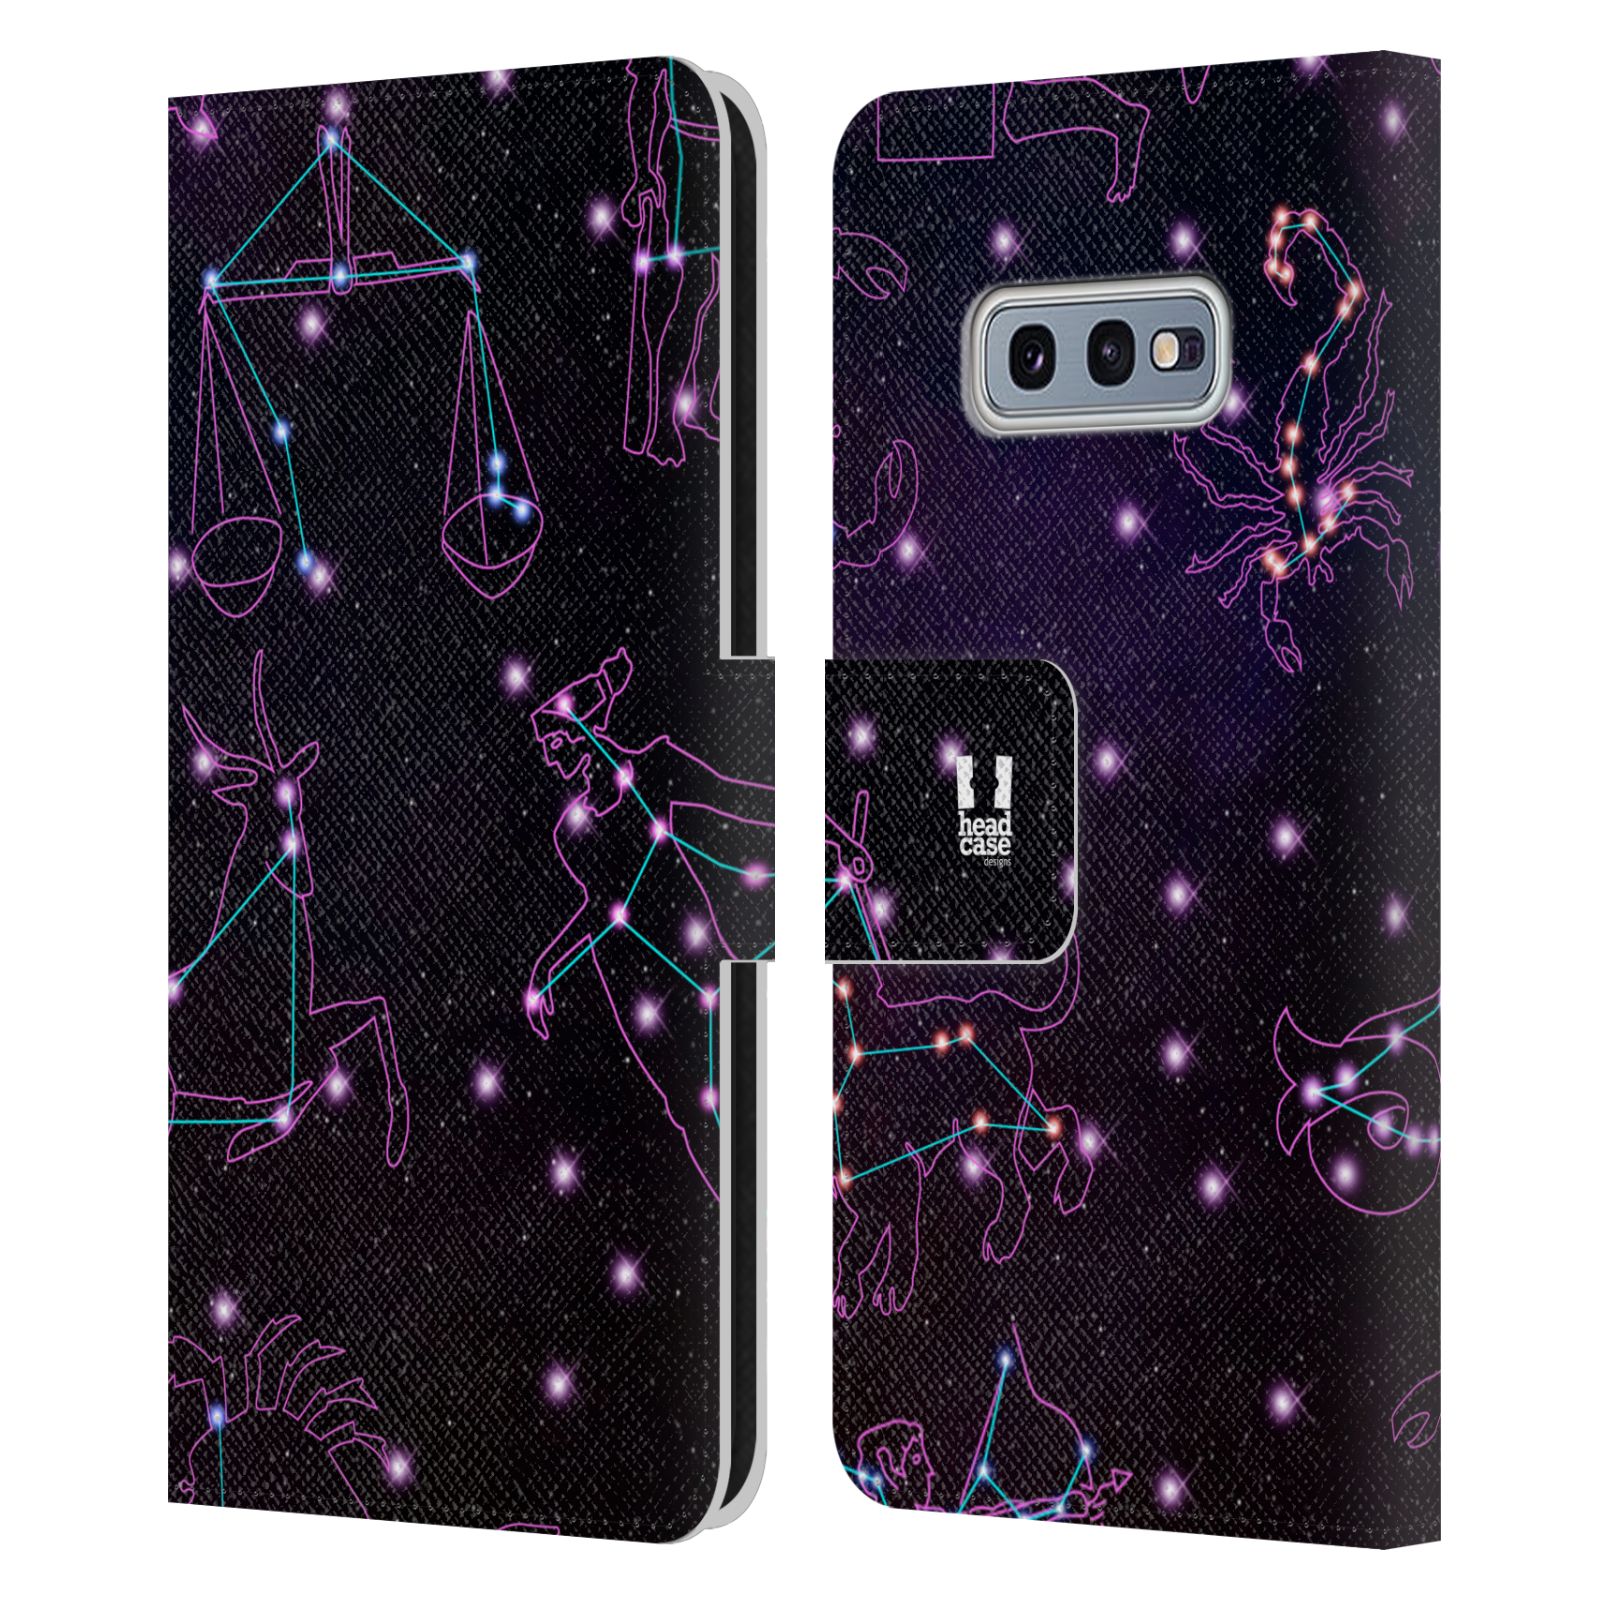 Pouzdro HEAD CASE na mobil Samsung Galaxy S10e znamení zvěrokruhu fialová